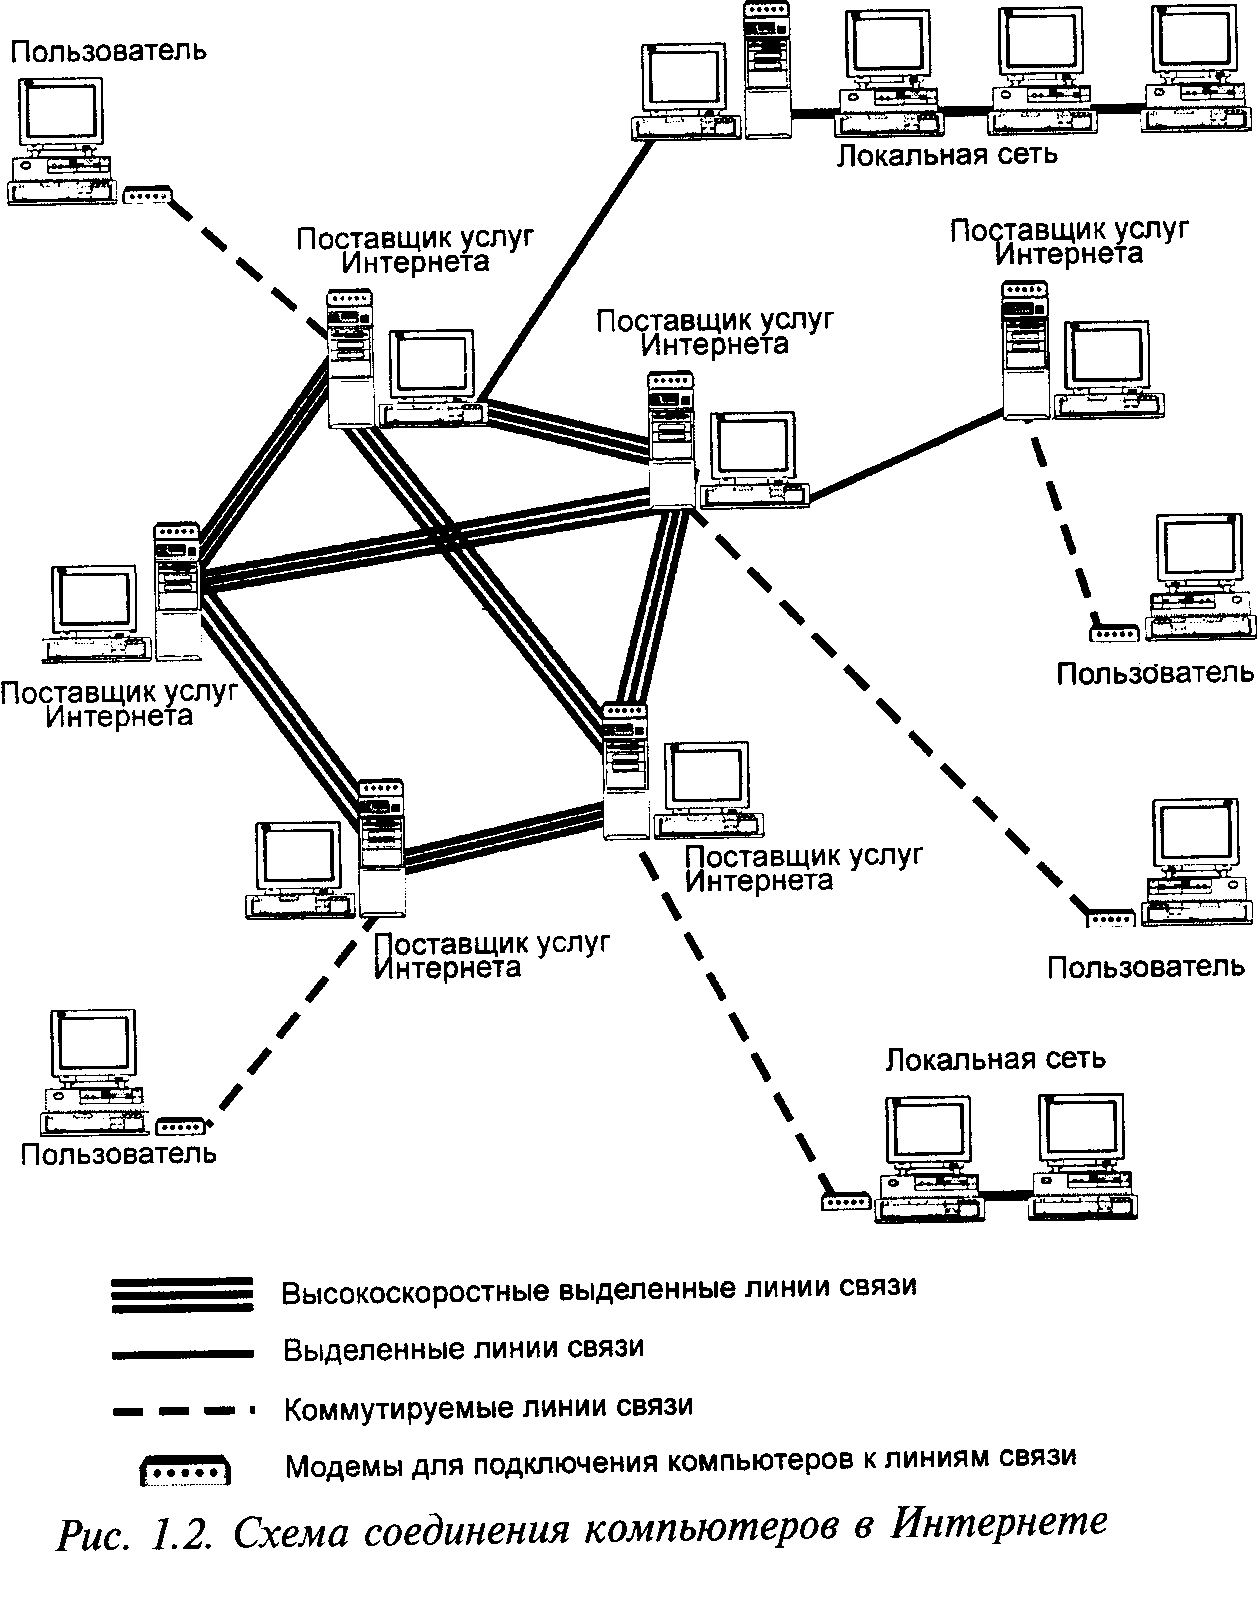 Соединение между серверами. Схема локальной сети организации интернет провайдера. Структурная схема подключения к локальной сети. Схема соединения 3 локальной сети. Принципиальные схемы сетей связи.